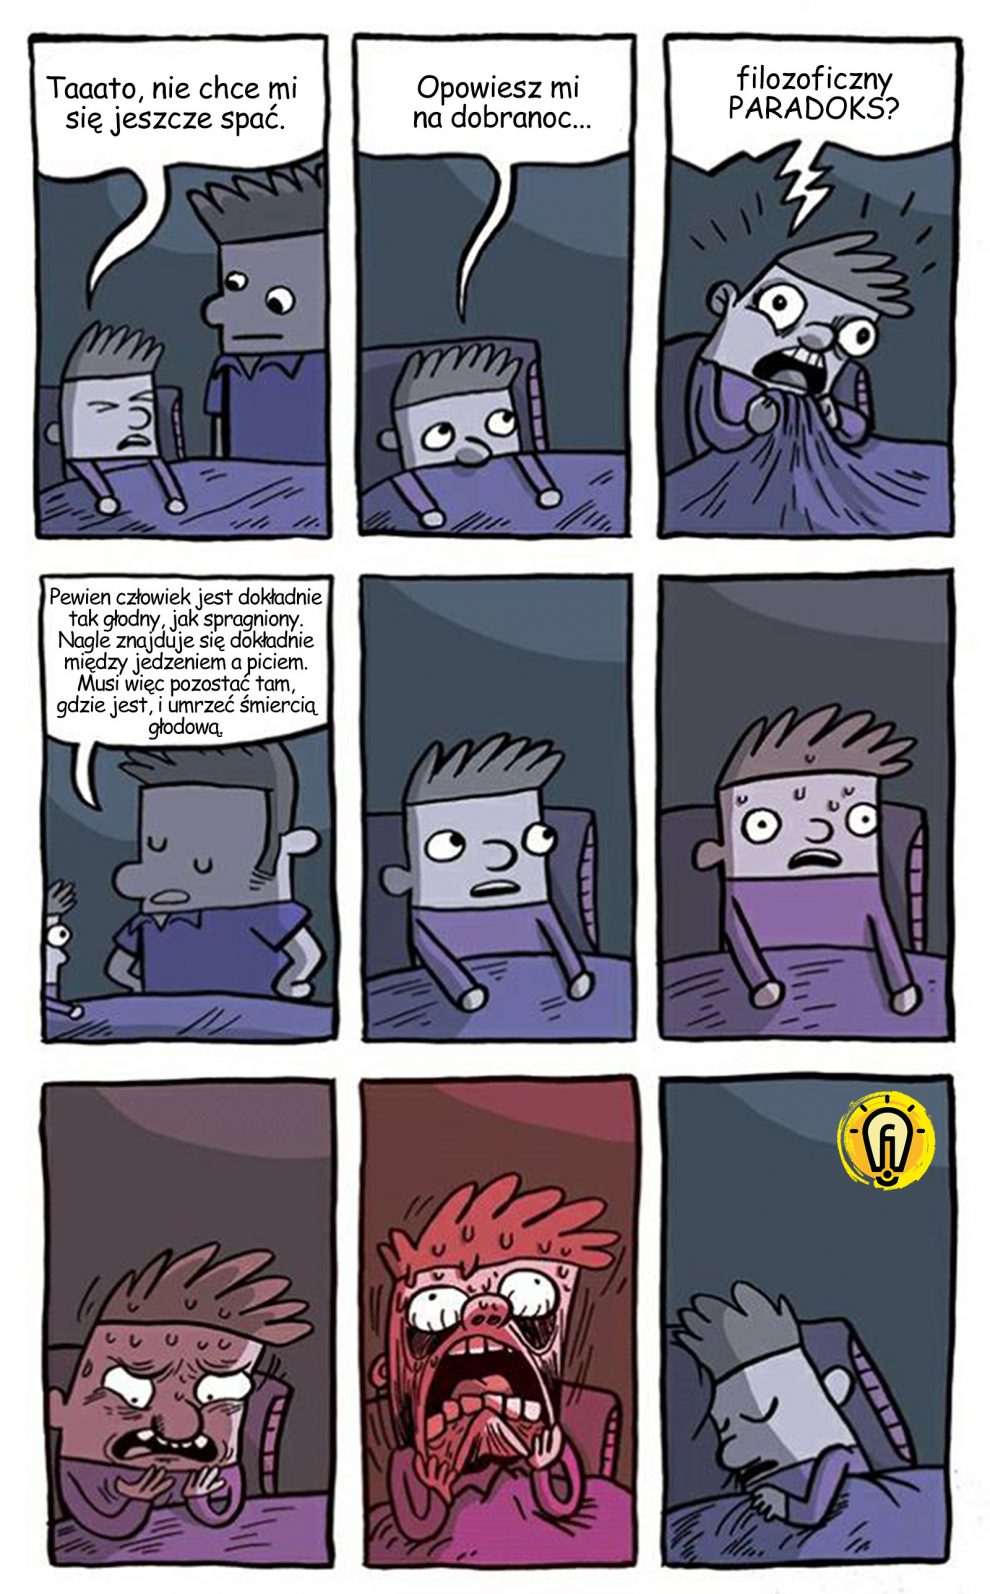 bedtimeparadox